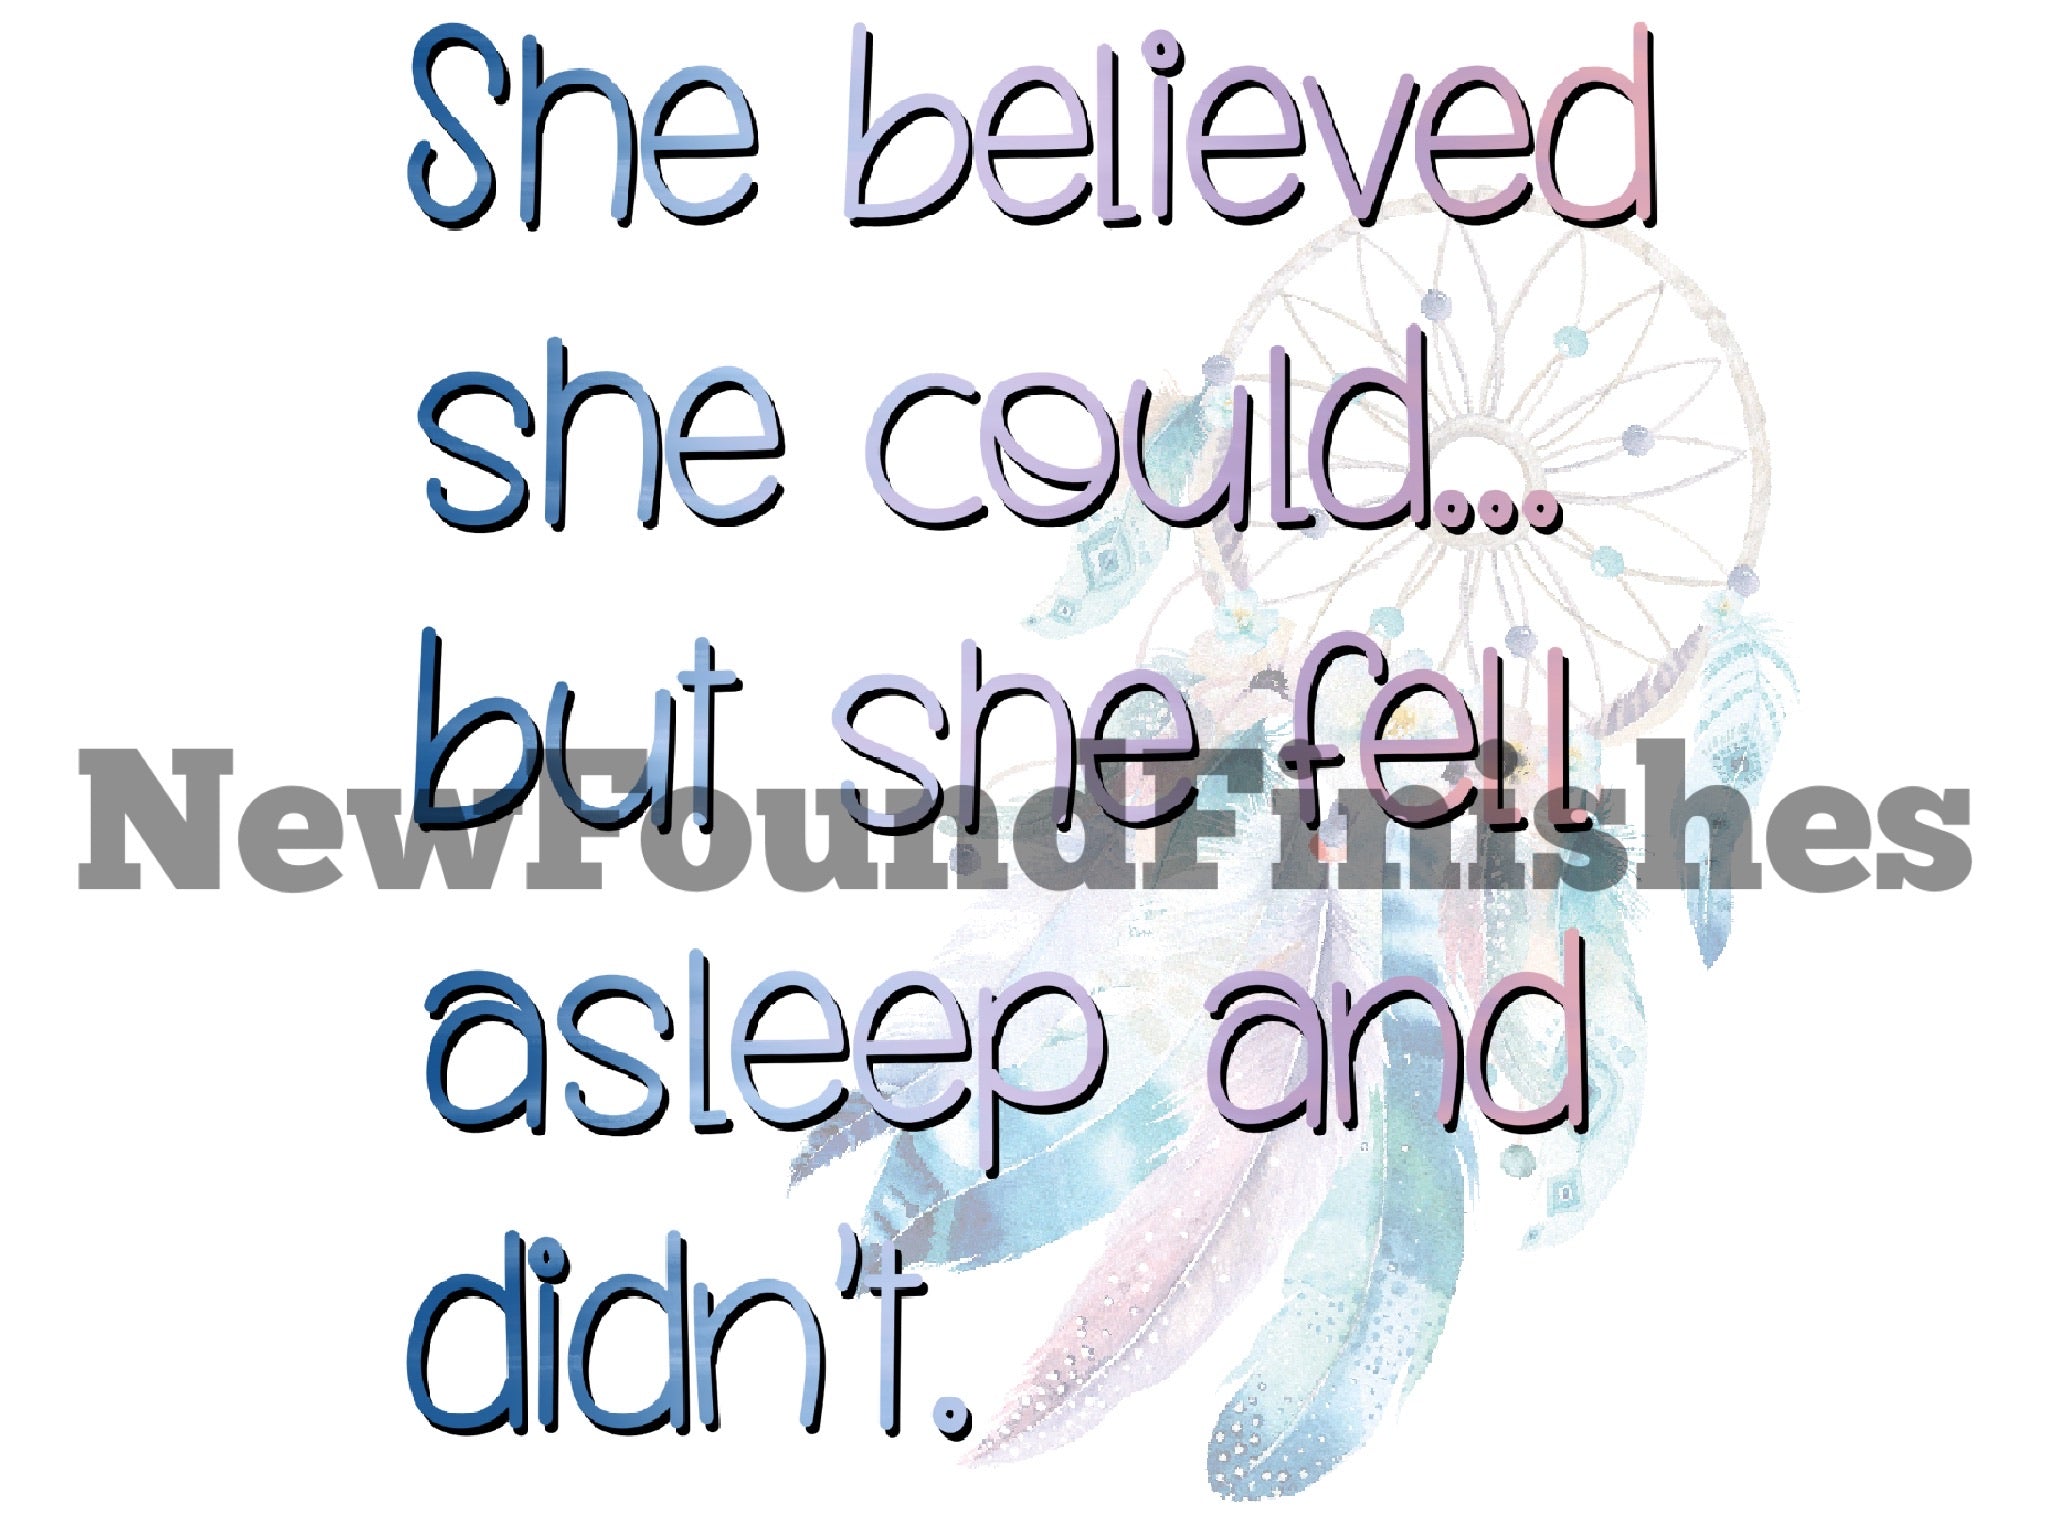 She believed